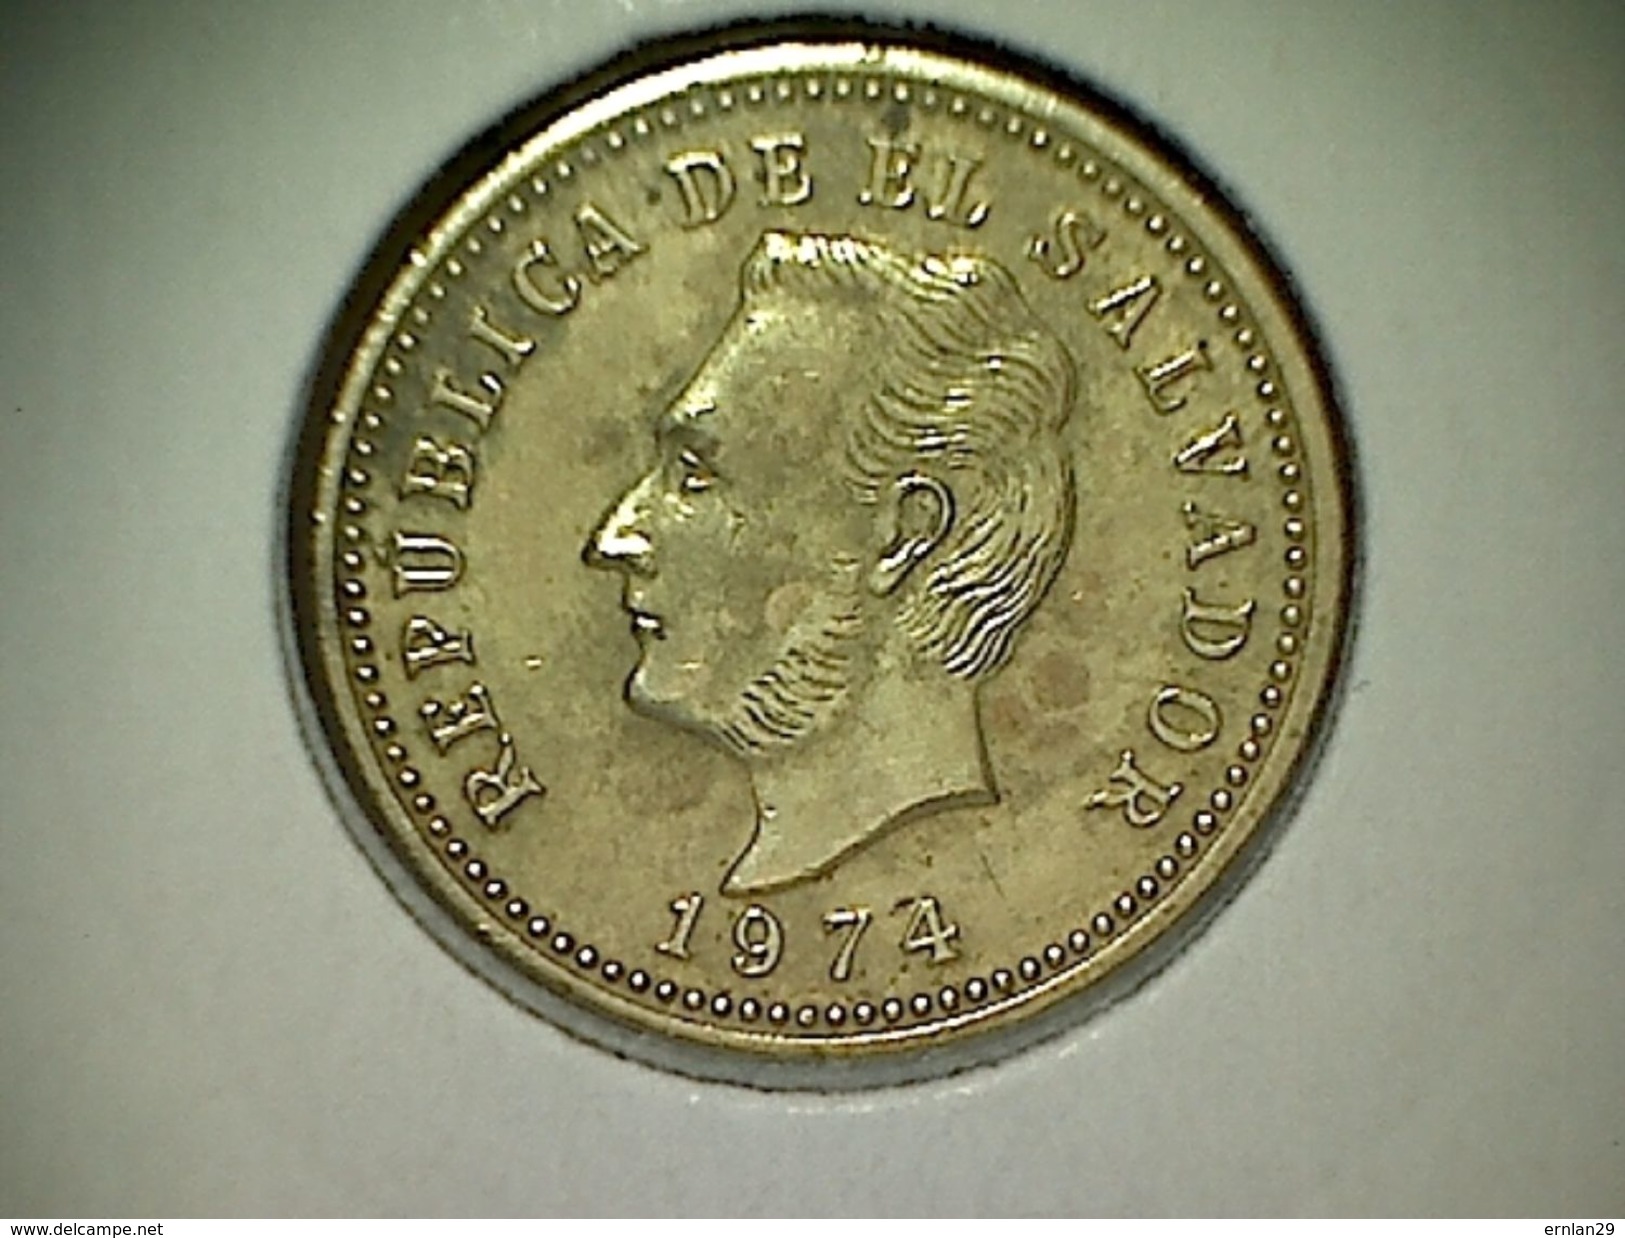 El Salvador 3 Centavos 1974 - El Salvador